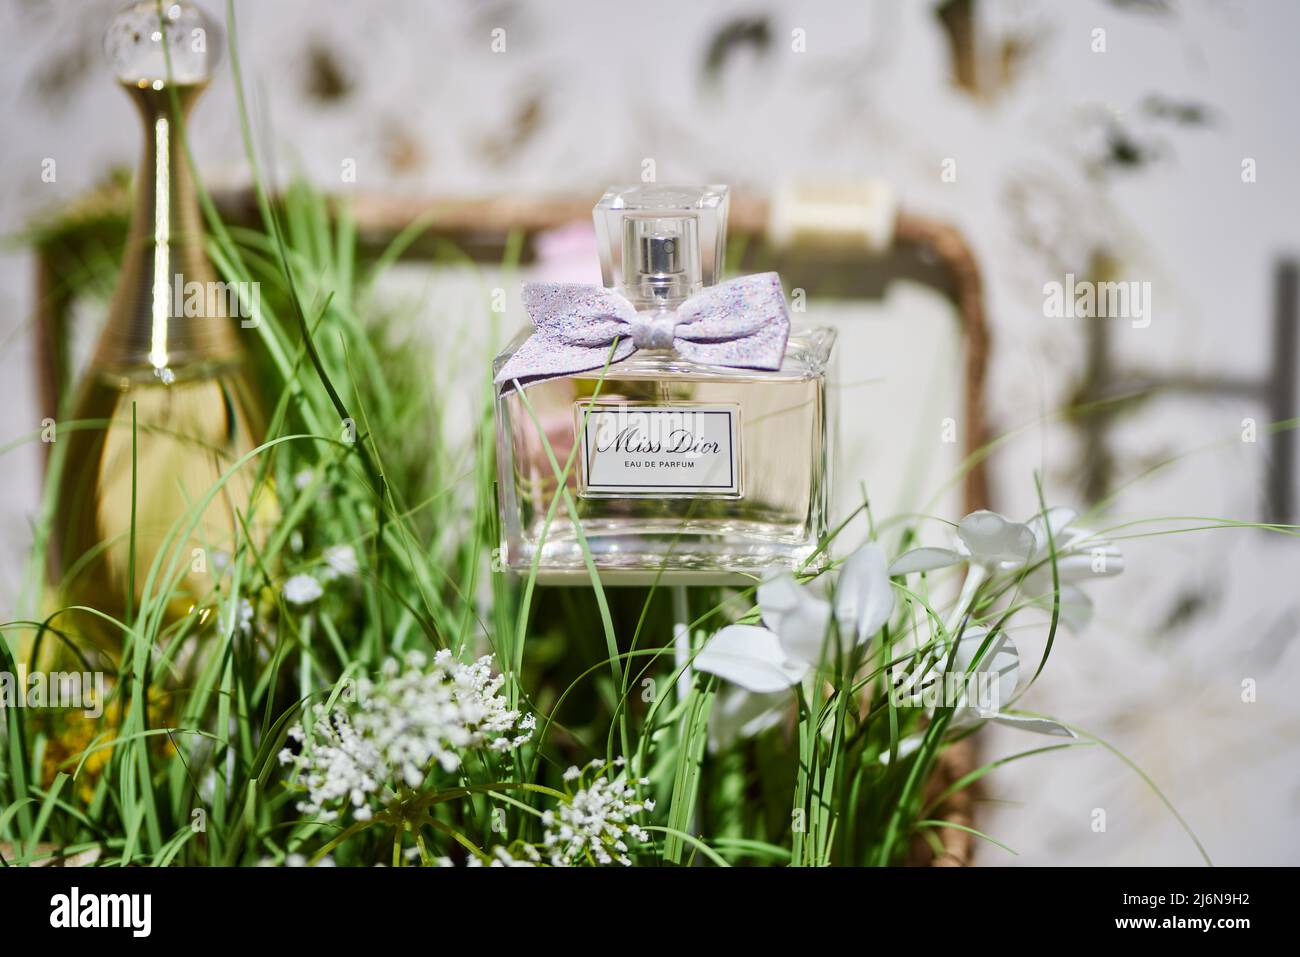 Miss Dior, Eau de Parfum, perfume bottle with ribbon Stock Photo